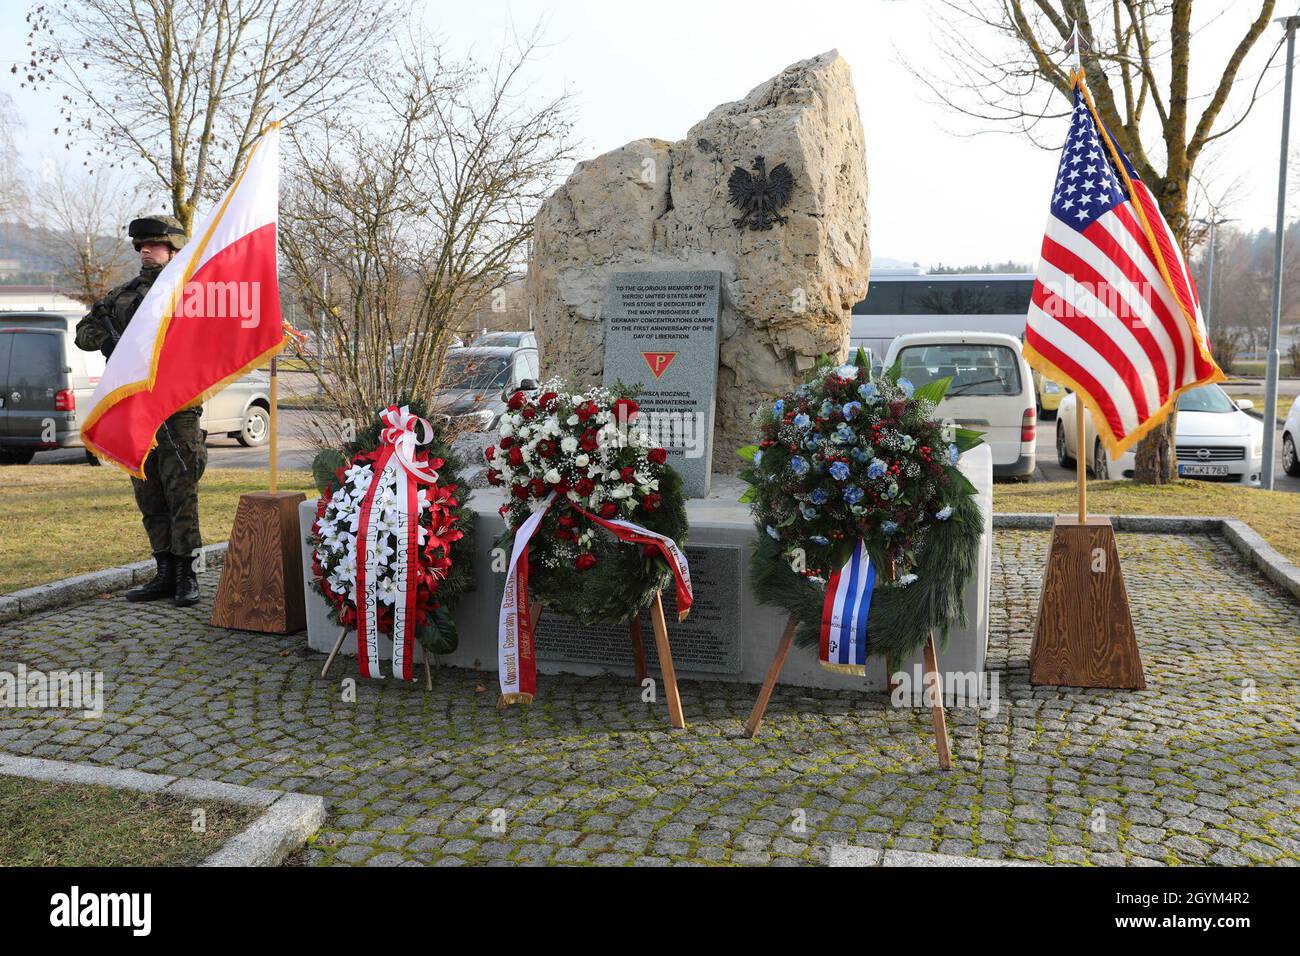 Das polnische Steindenkmal in Hohenfels, Deutschland, wurde am 27. Januar 2020 in einer feierlichen Zeremonie neu eingeweiht. Das renovierte polnische Denkmal dient der Verewigung der Erinnerung an die polnischen Vertriebenen, die nach dem Zweiten Weltkrieg in Hohenfels lebten (USA Foto der Armee-Nationalgarde von Staff Sgt. Gregory Stevens) Stockfoto